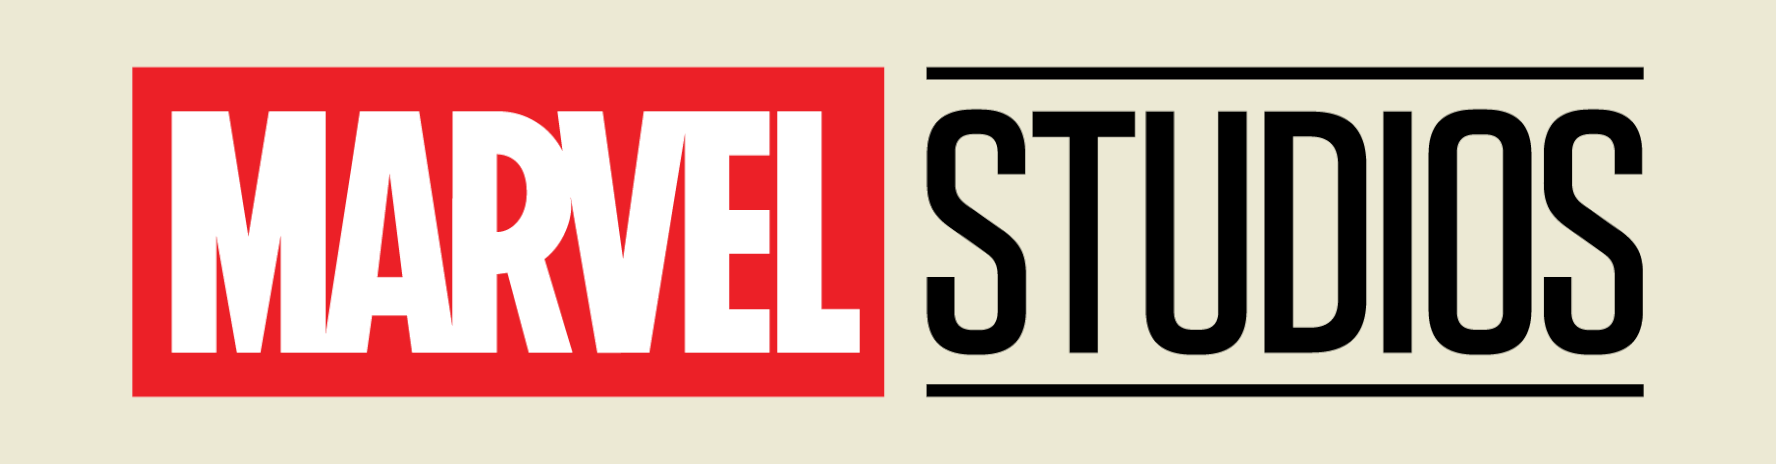 Marvel Studios - Banner - Mobile